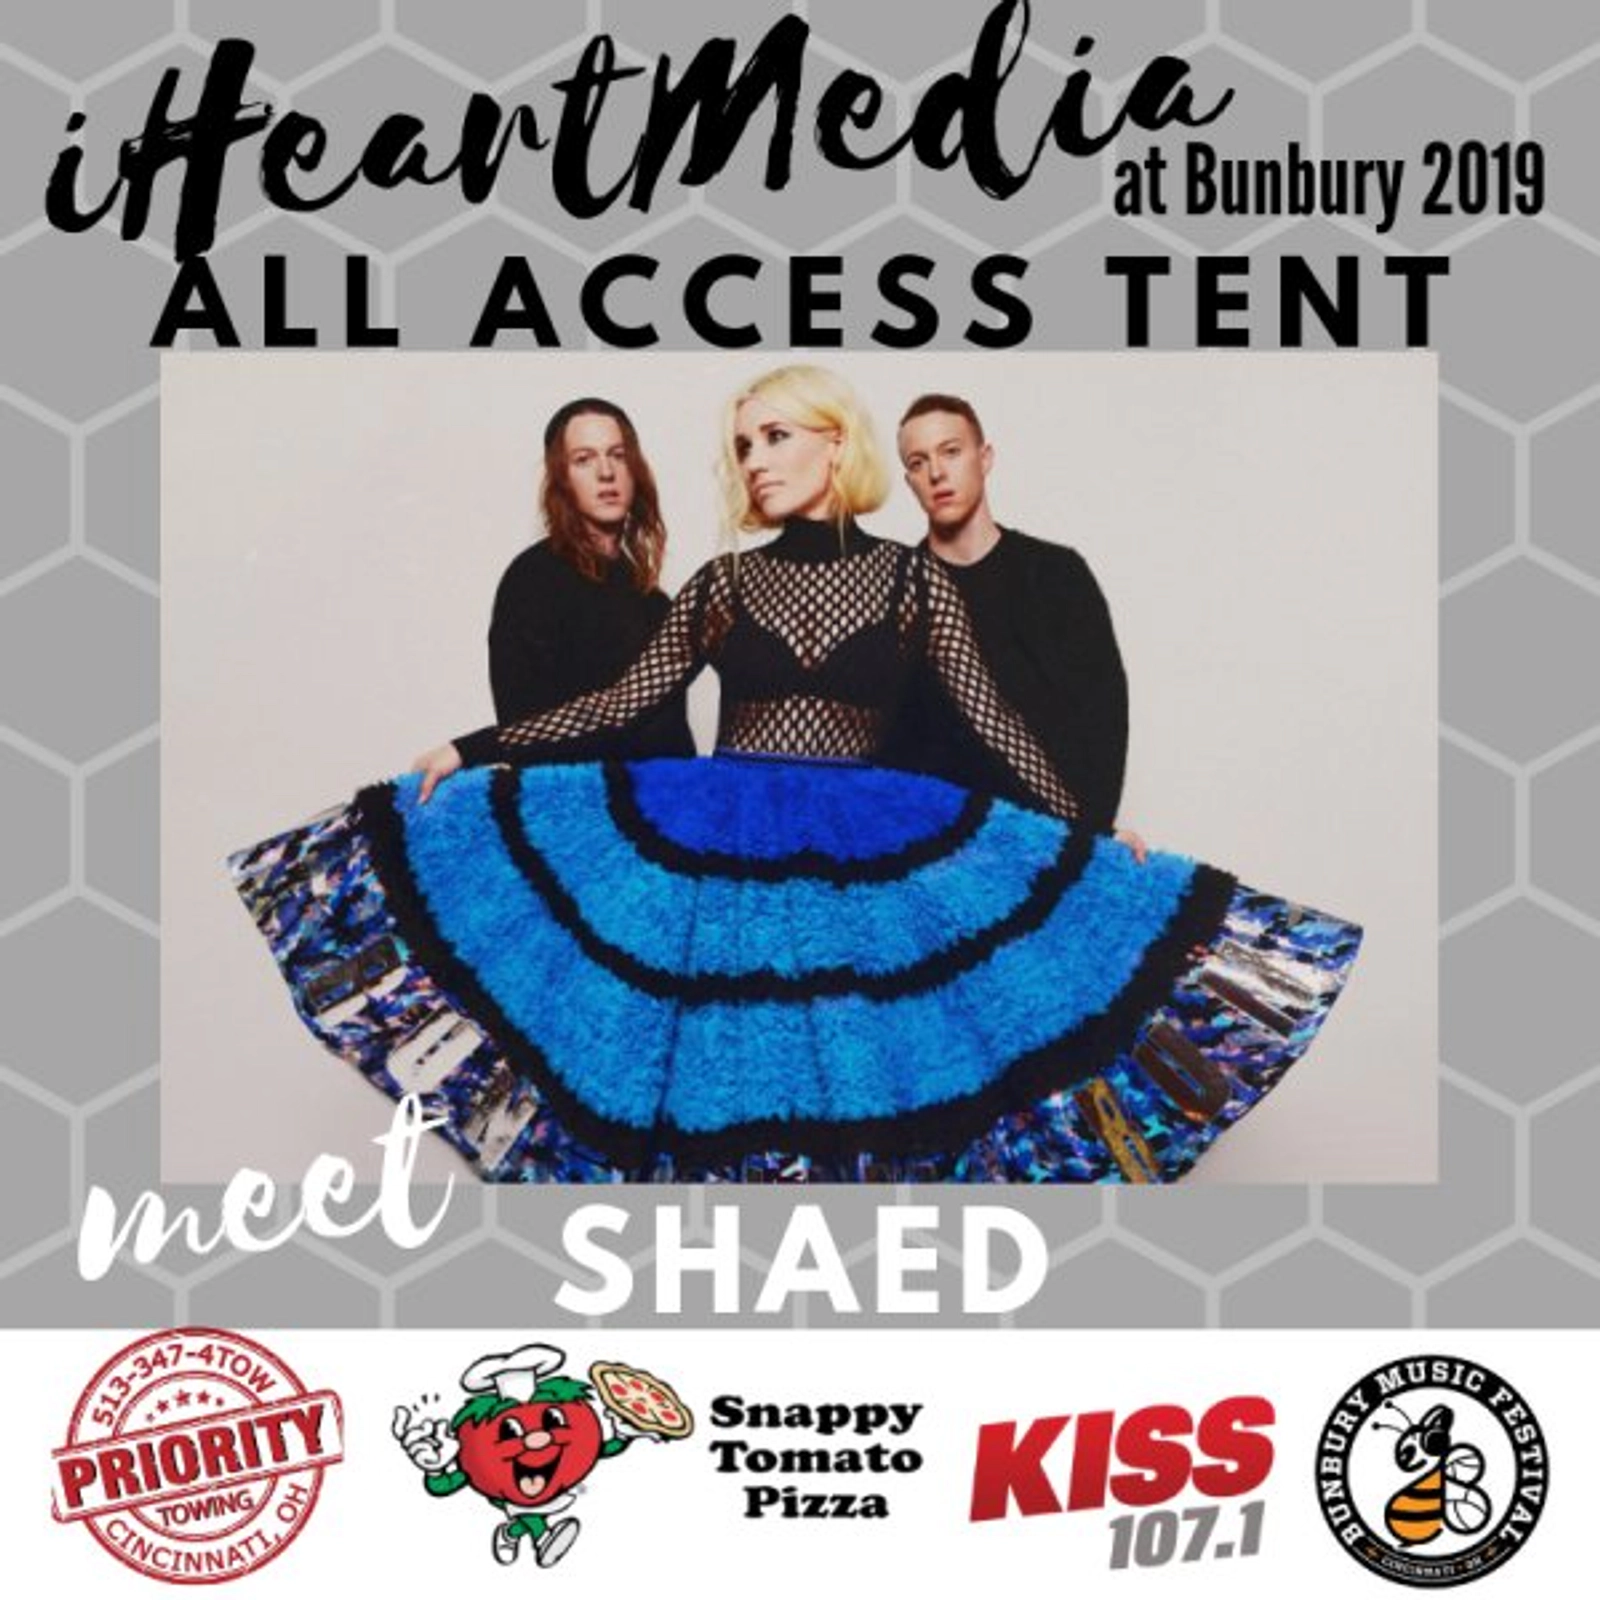 Meet Shaed at Bunbury 2019! - Thumbnail Image